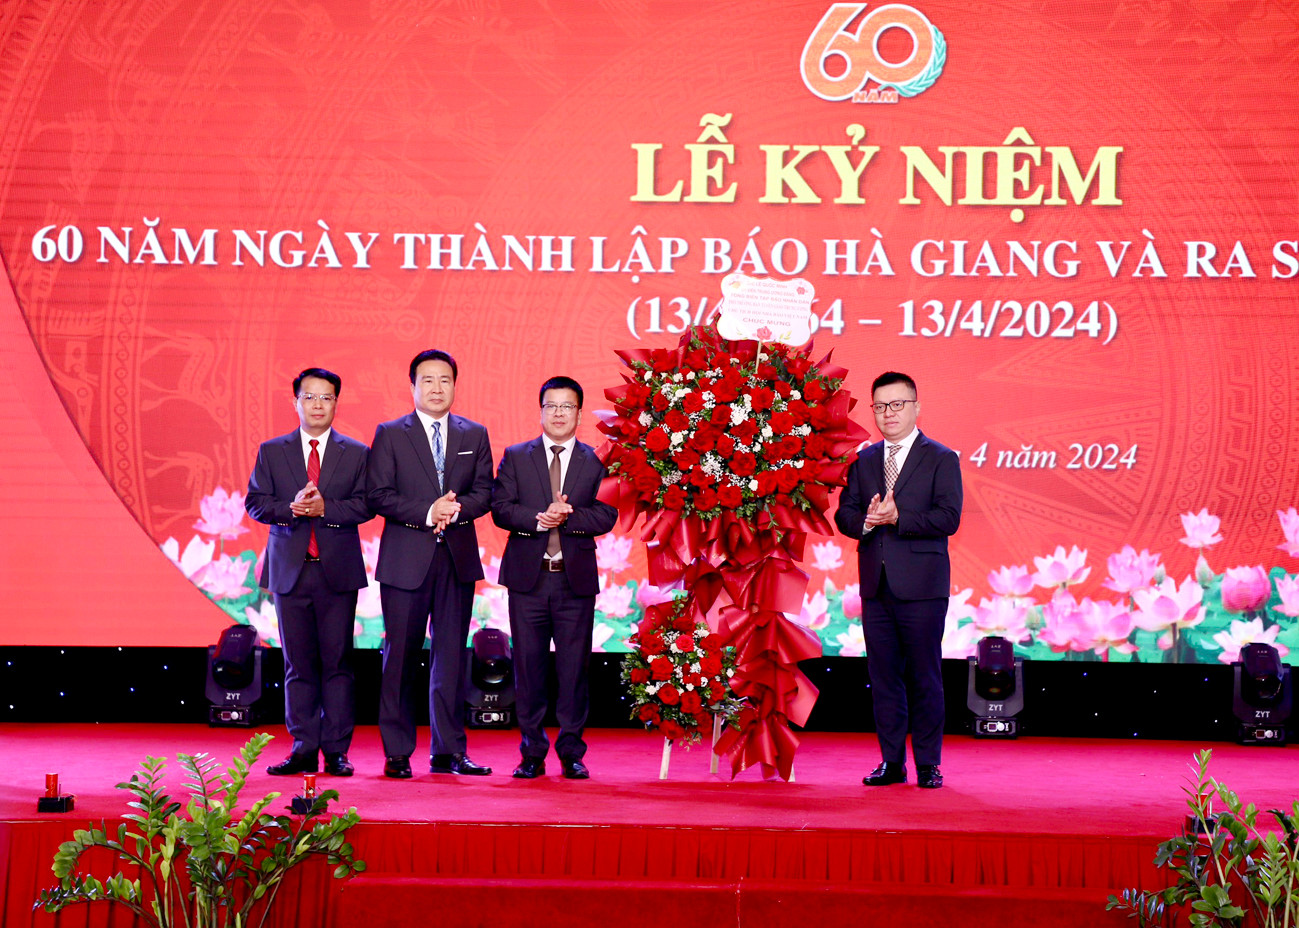 Đồng chí Lê Quốc Minh tặng lẵng hoa chúc mừng Báo Hà Giang